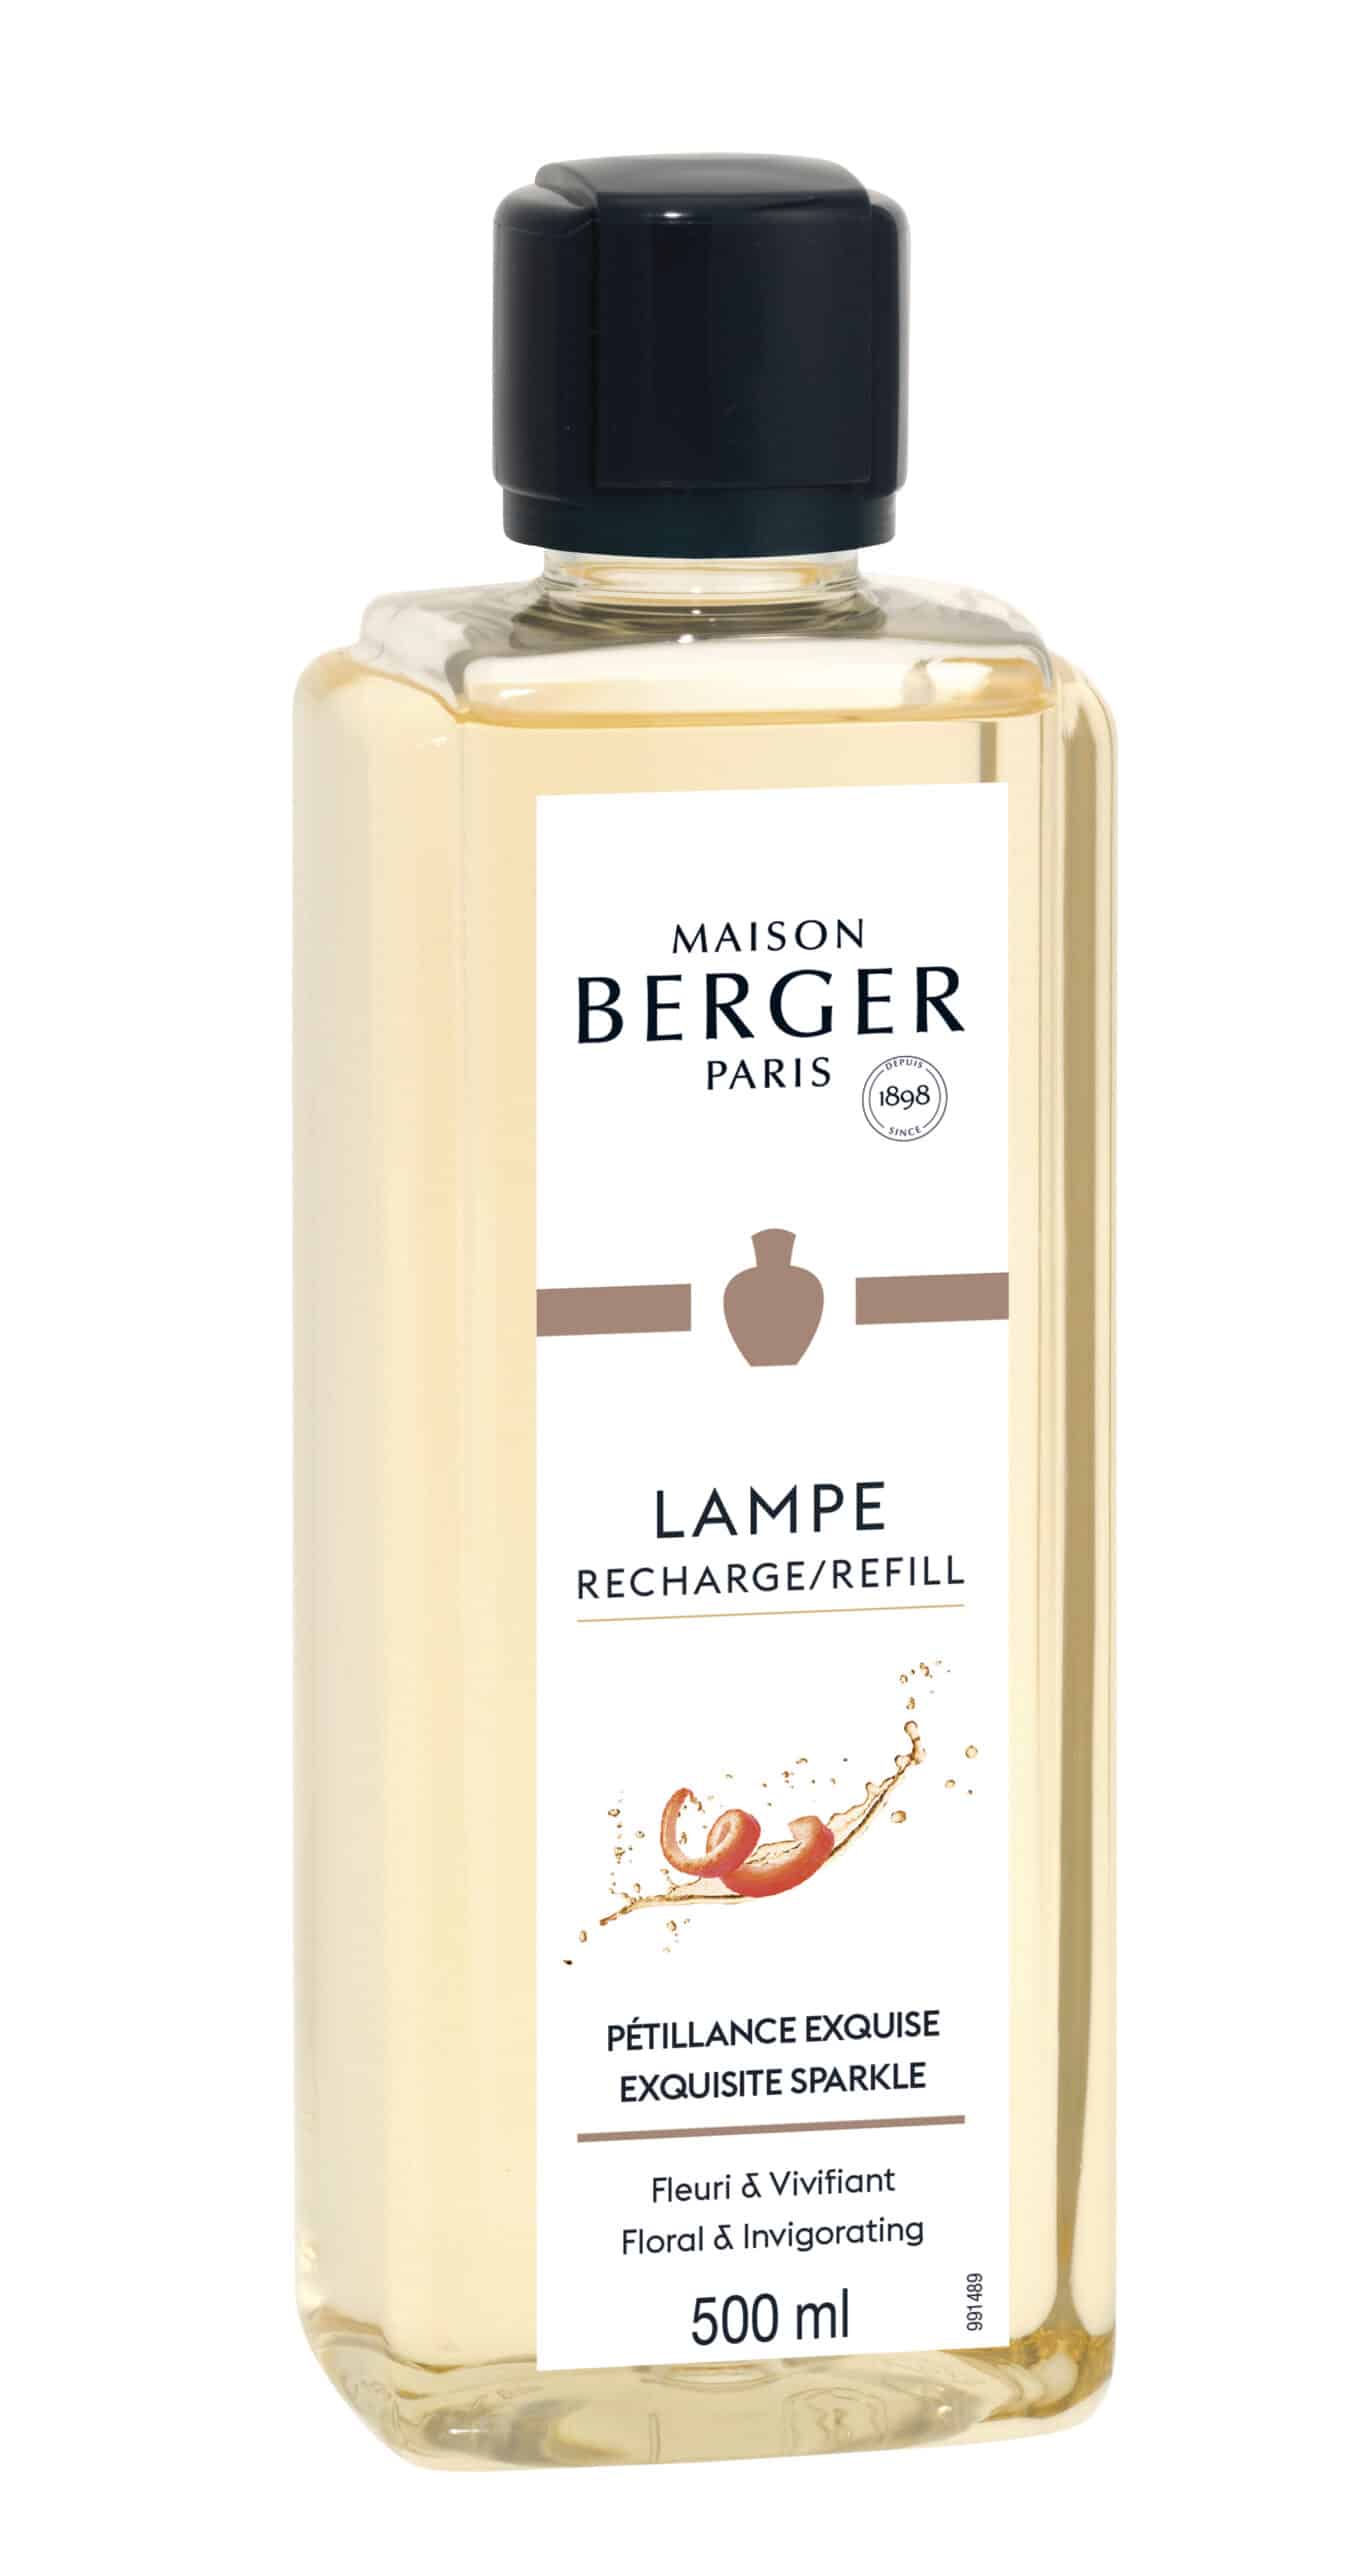 Maison Berger Paris - parfum Exquisite Sparkle - 500 ml